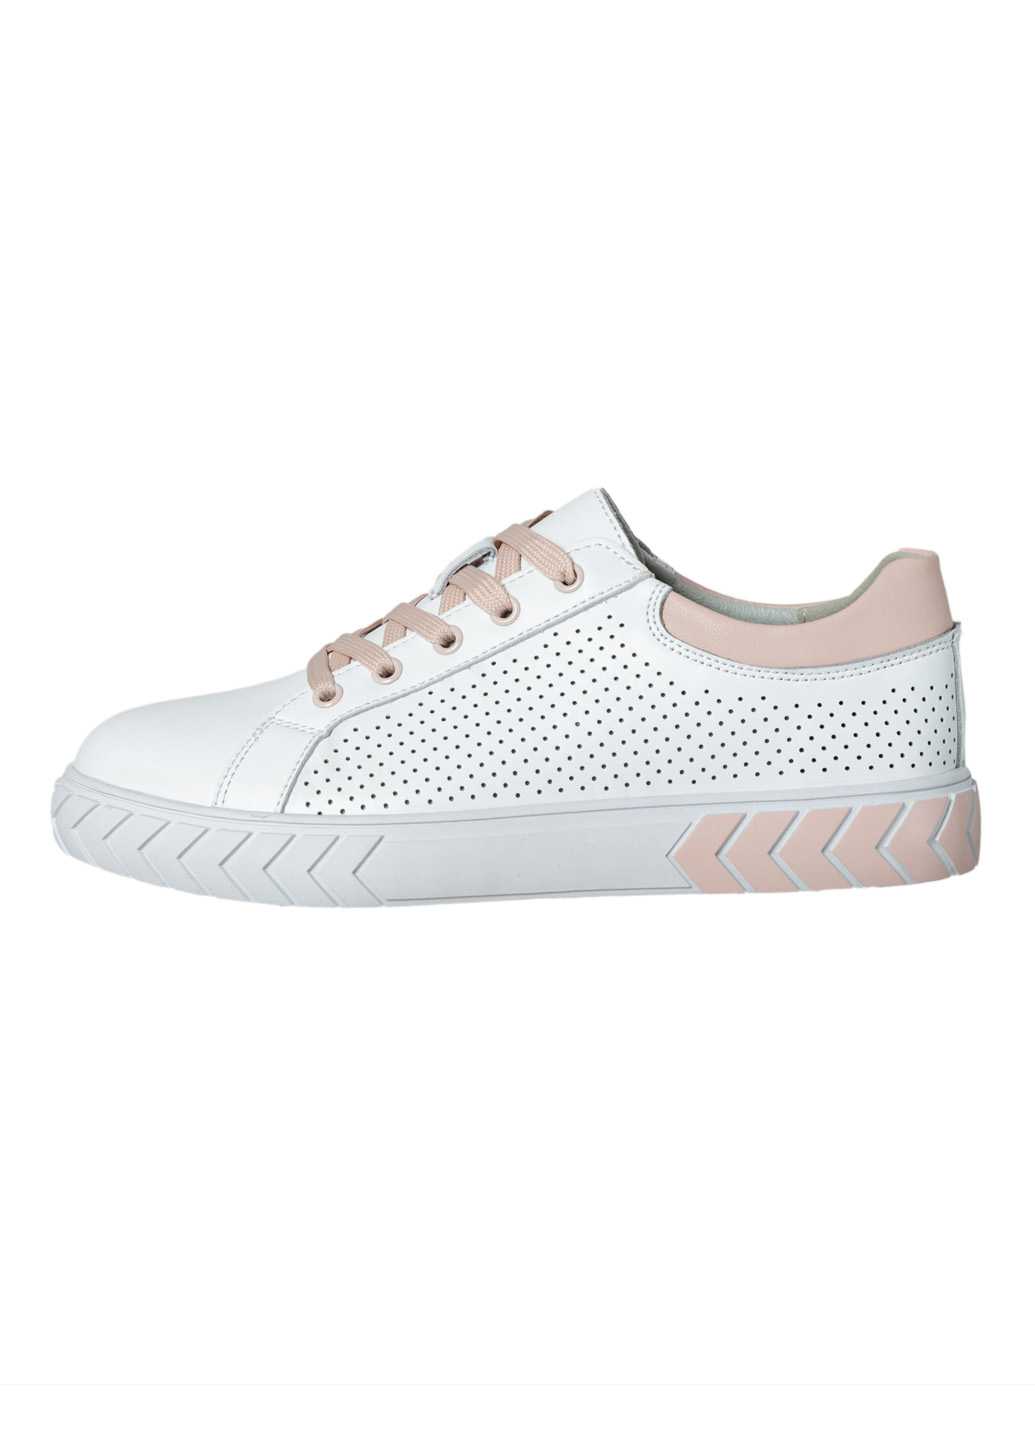 Жіночі кросівки Lifexpert натуральна шкіра білого кольору з перфорацією та рожевими вставками